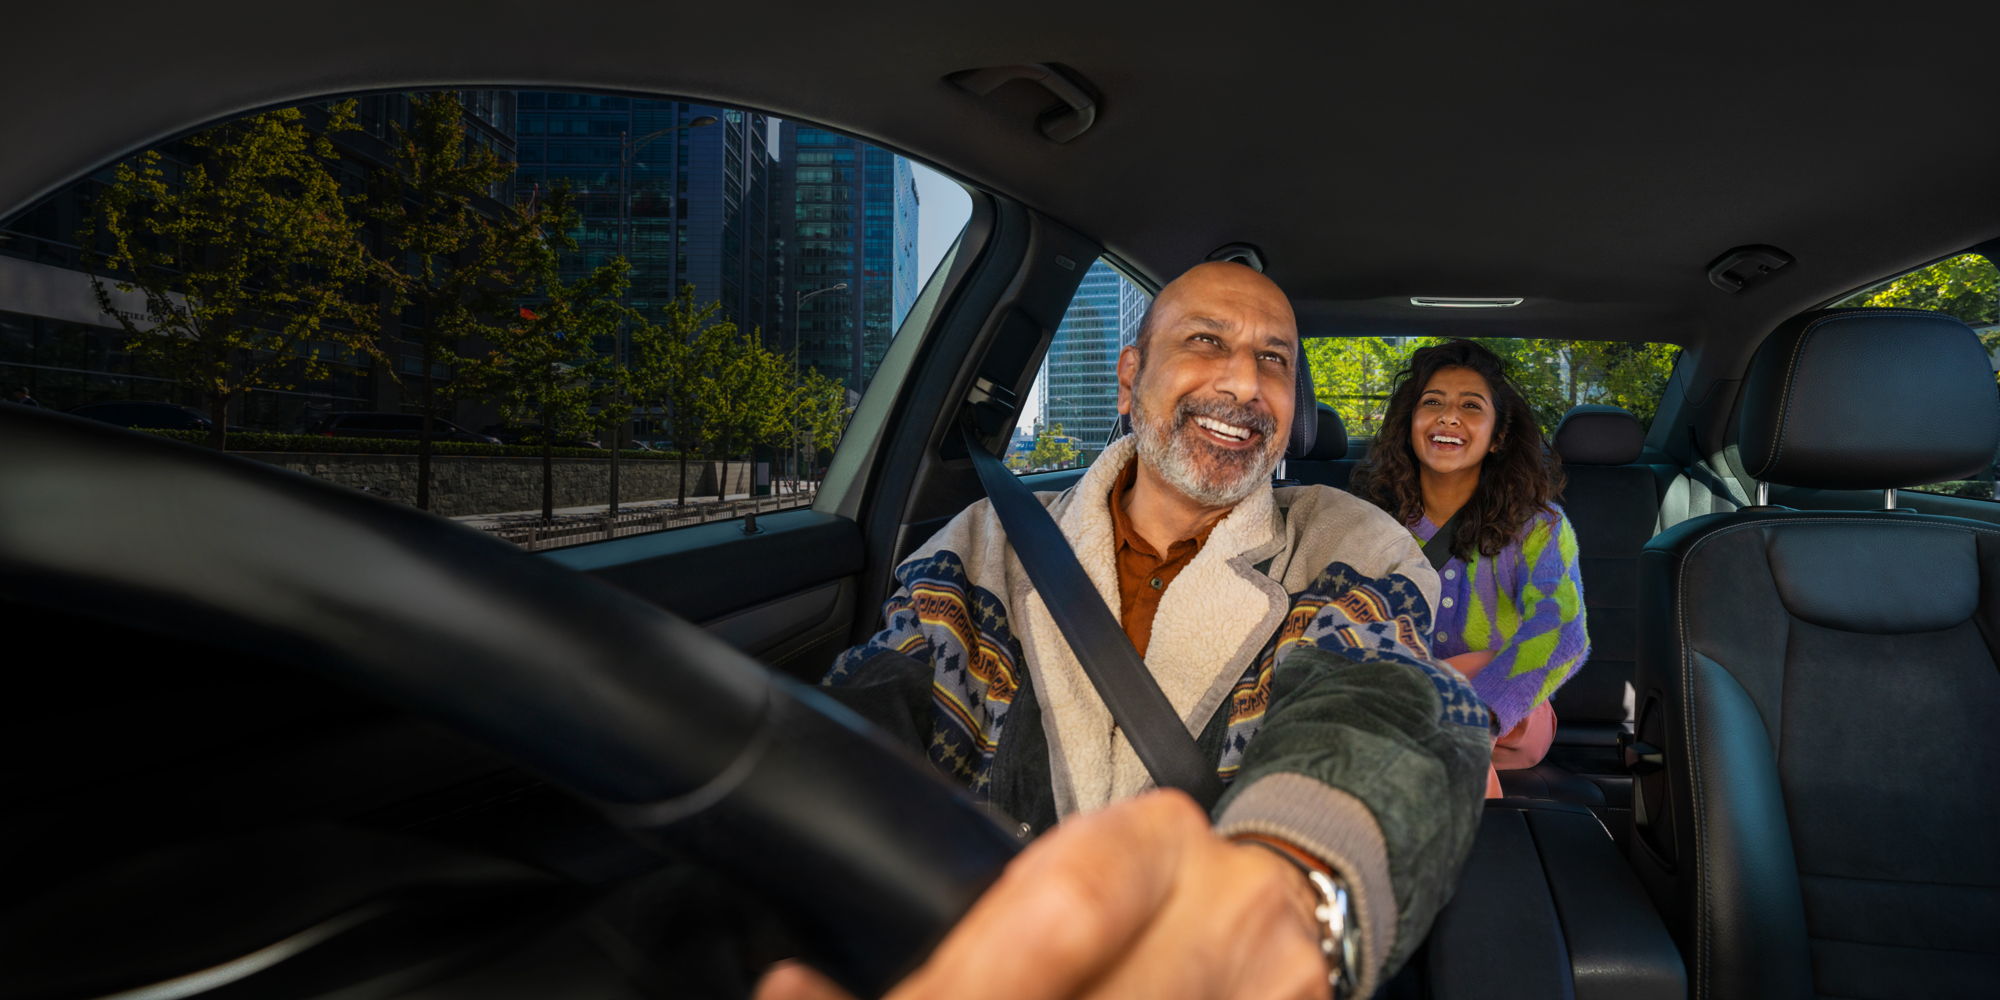 Reconoce inDrive a conductor que canta con pasajeros para brindar “viajes más humanos